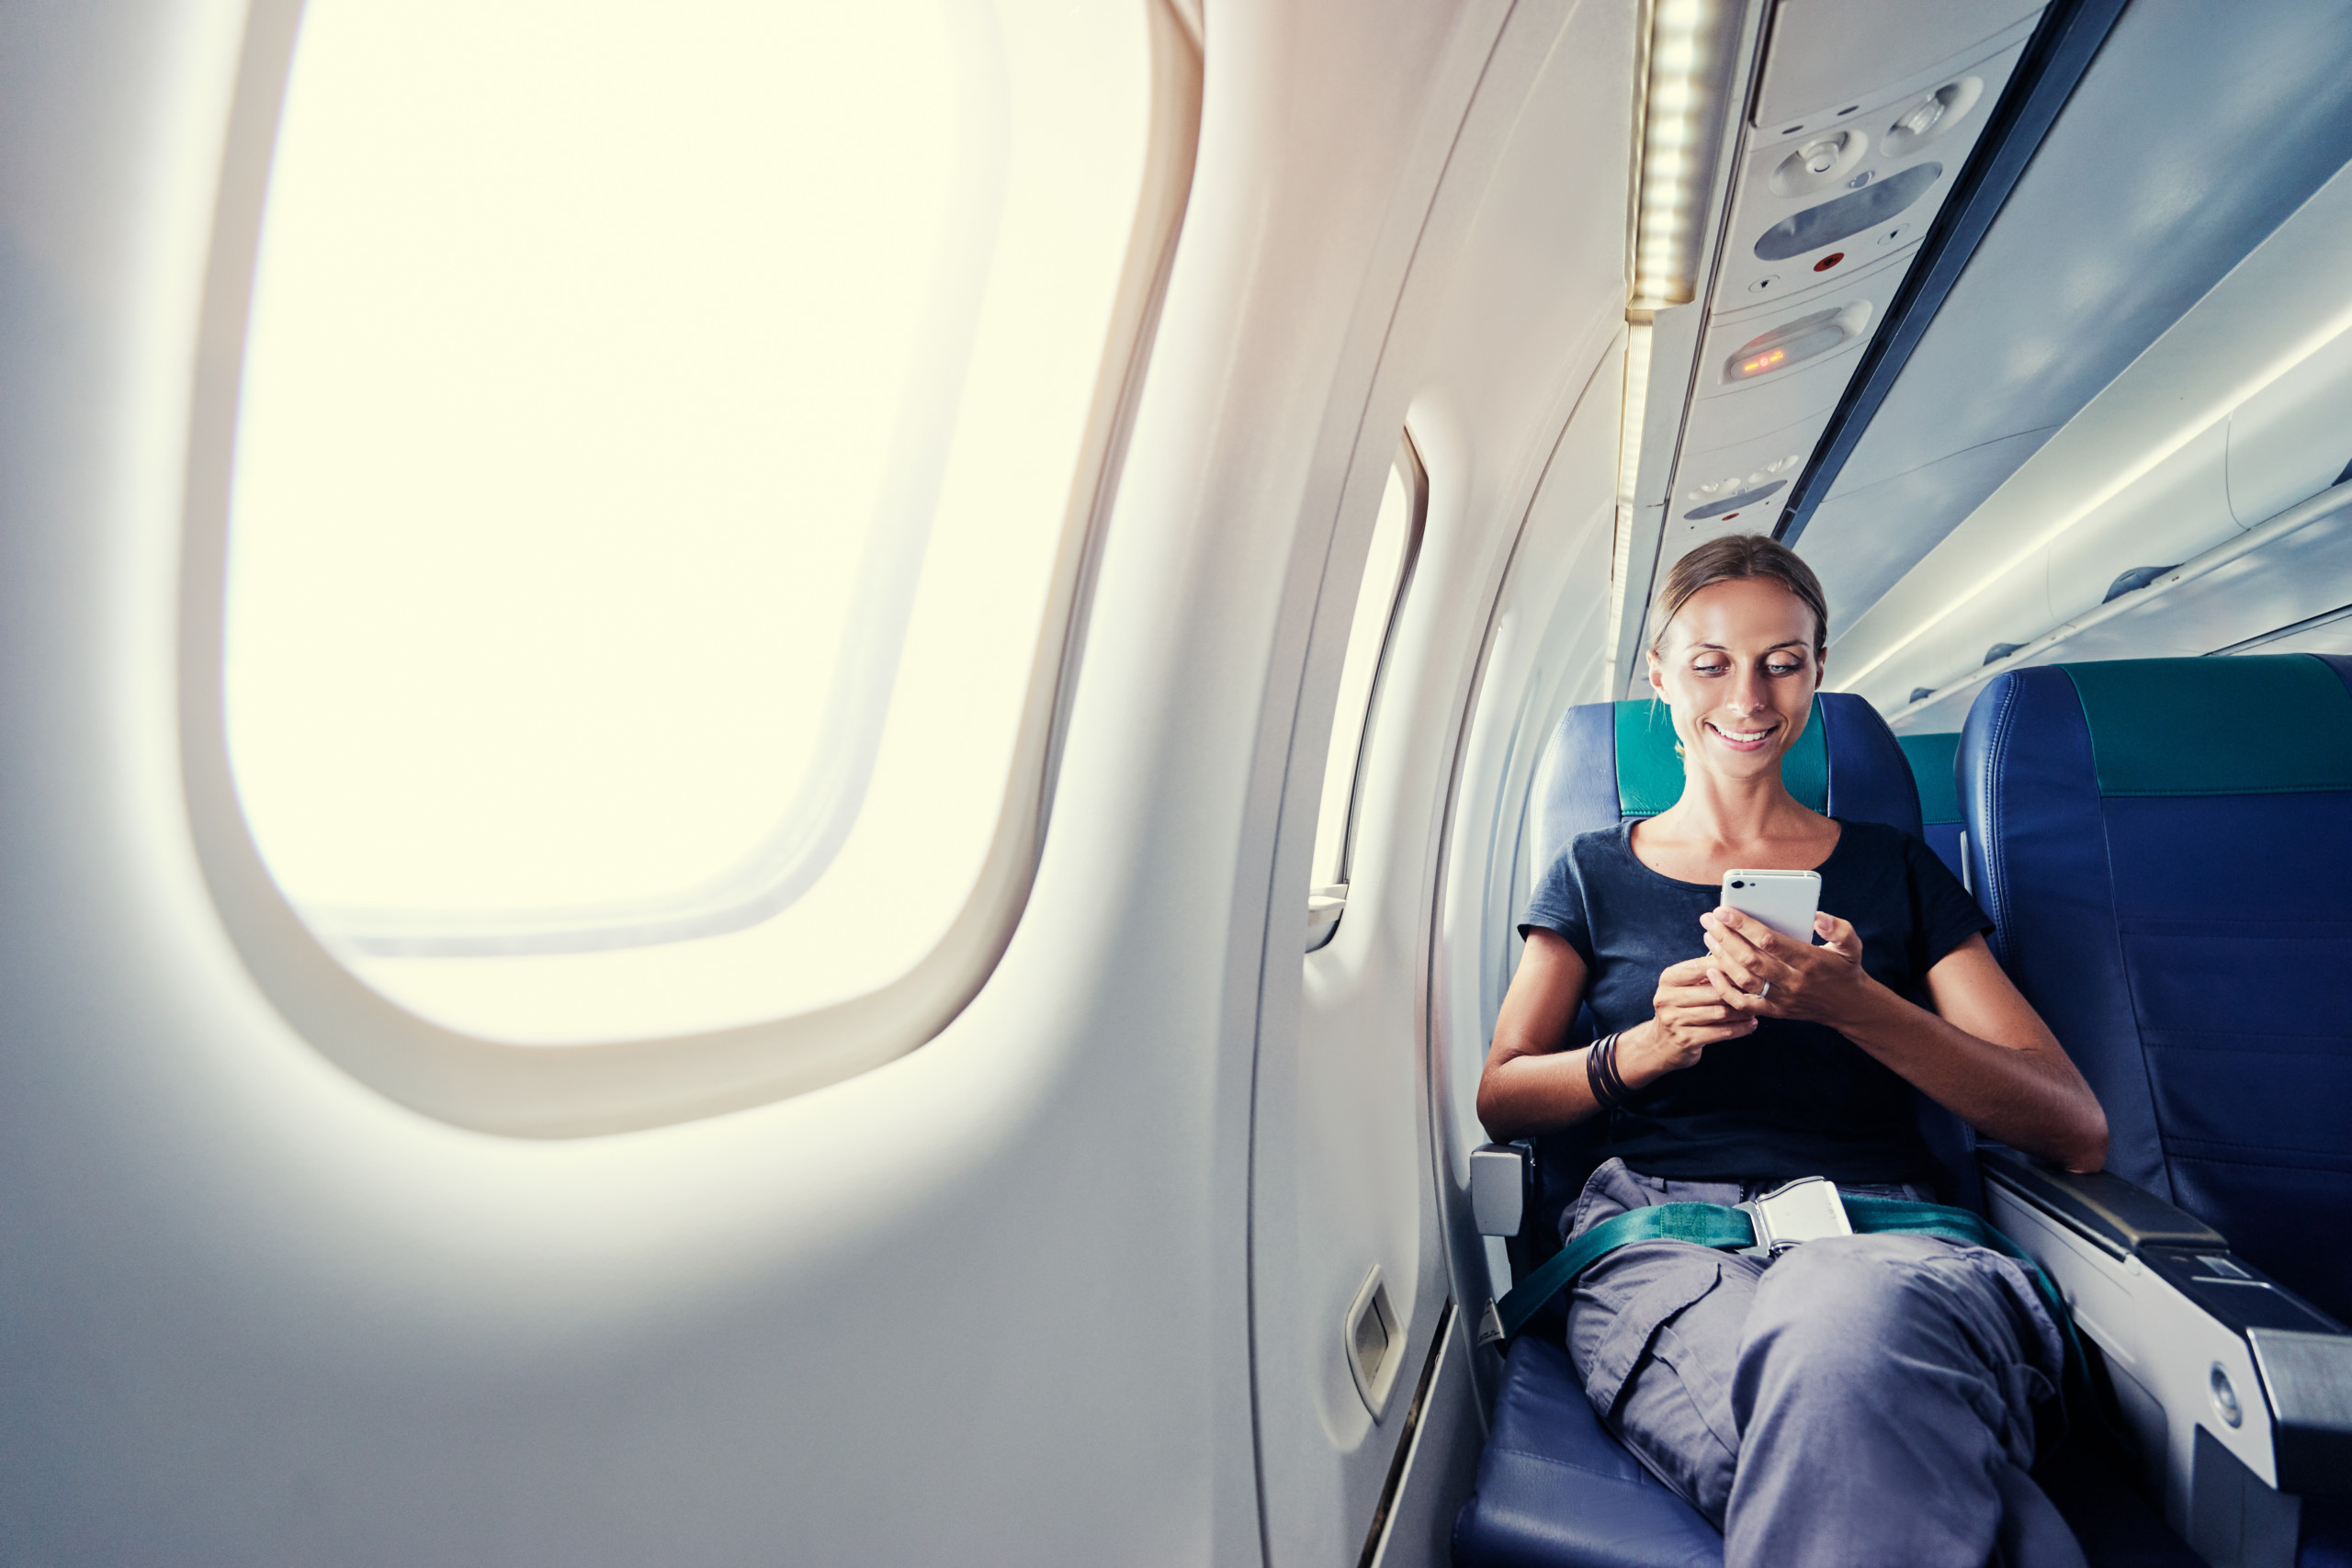 Chuyện gì sẽ xảy ra khi không tắt điện thoại di động trên máy bay?